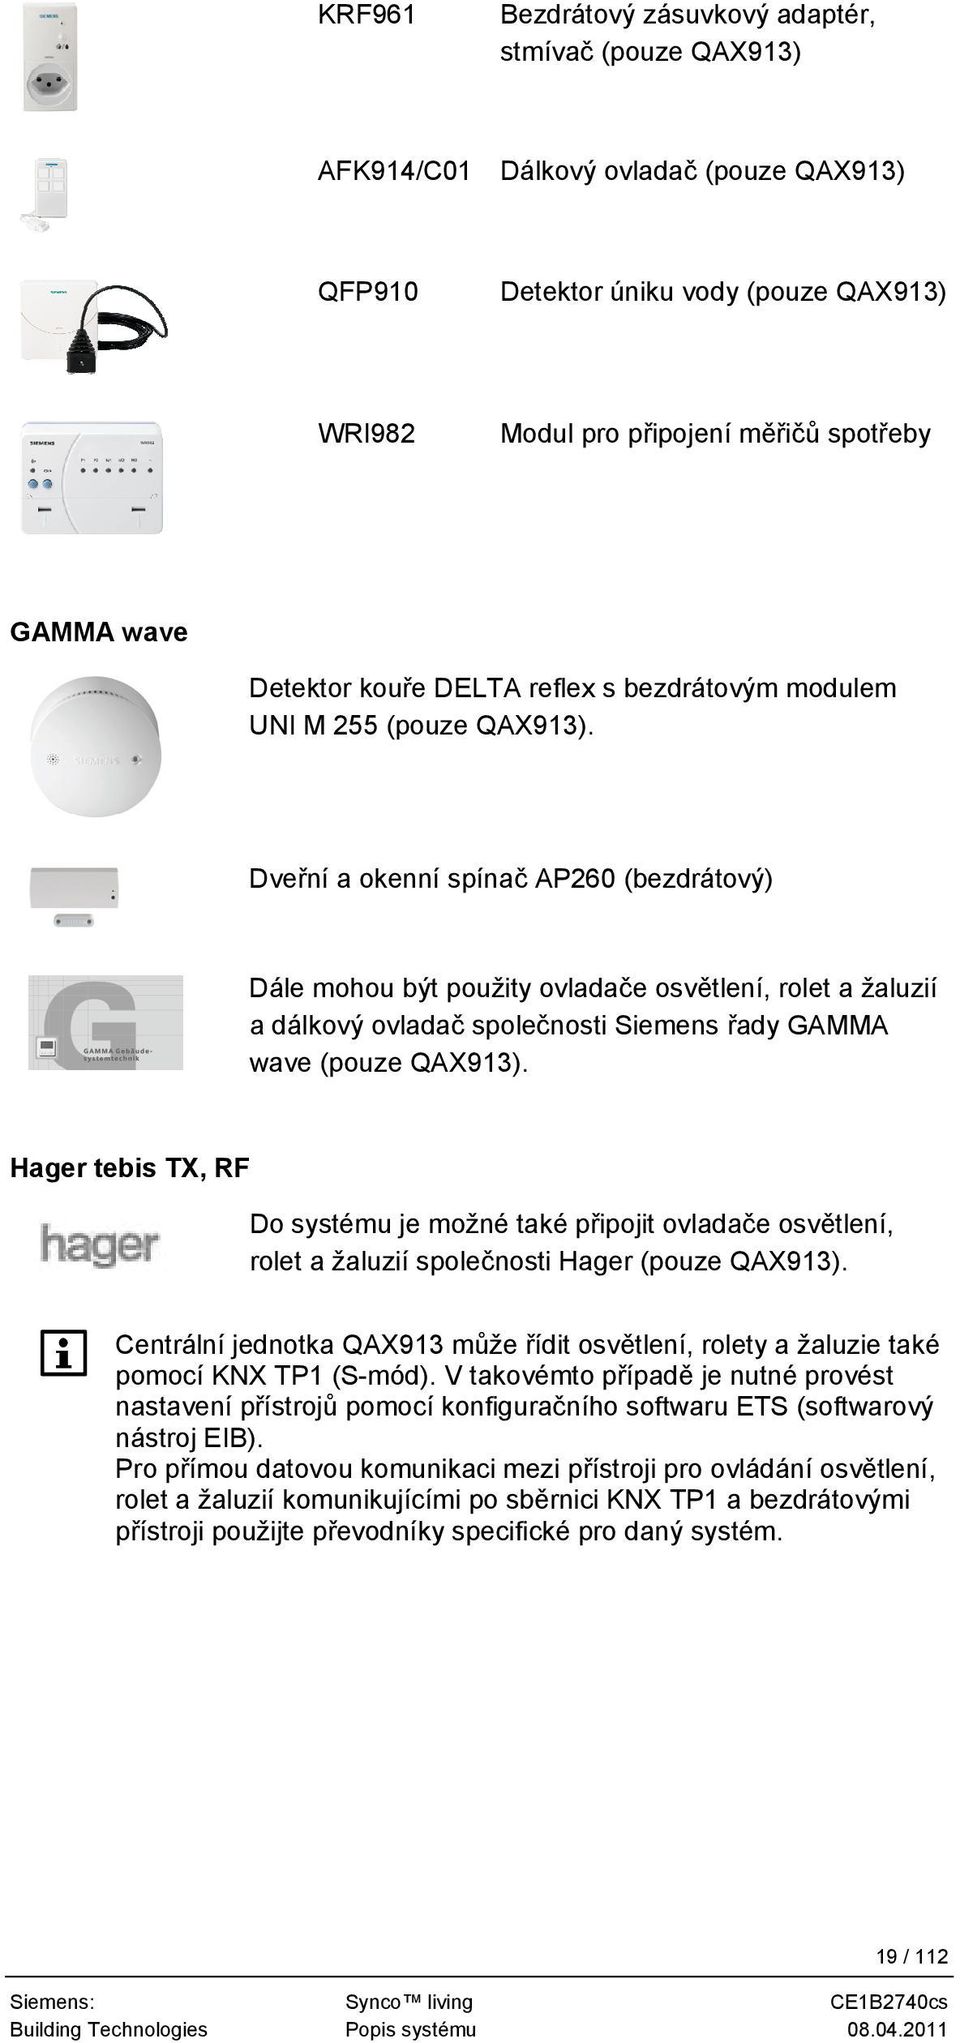 Dveřní a okenní spínač AP260 (bezdrátový) Dále mohou být použity ovladače osvětlení, rolet a žaluzií a dálkový ovladač společnosti Siemens řady GAMMA wave (pouze QAX913).